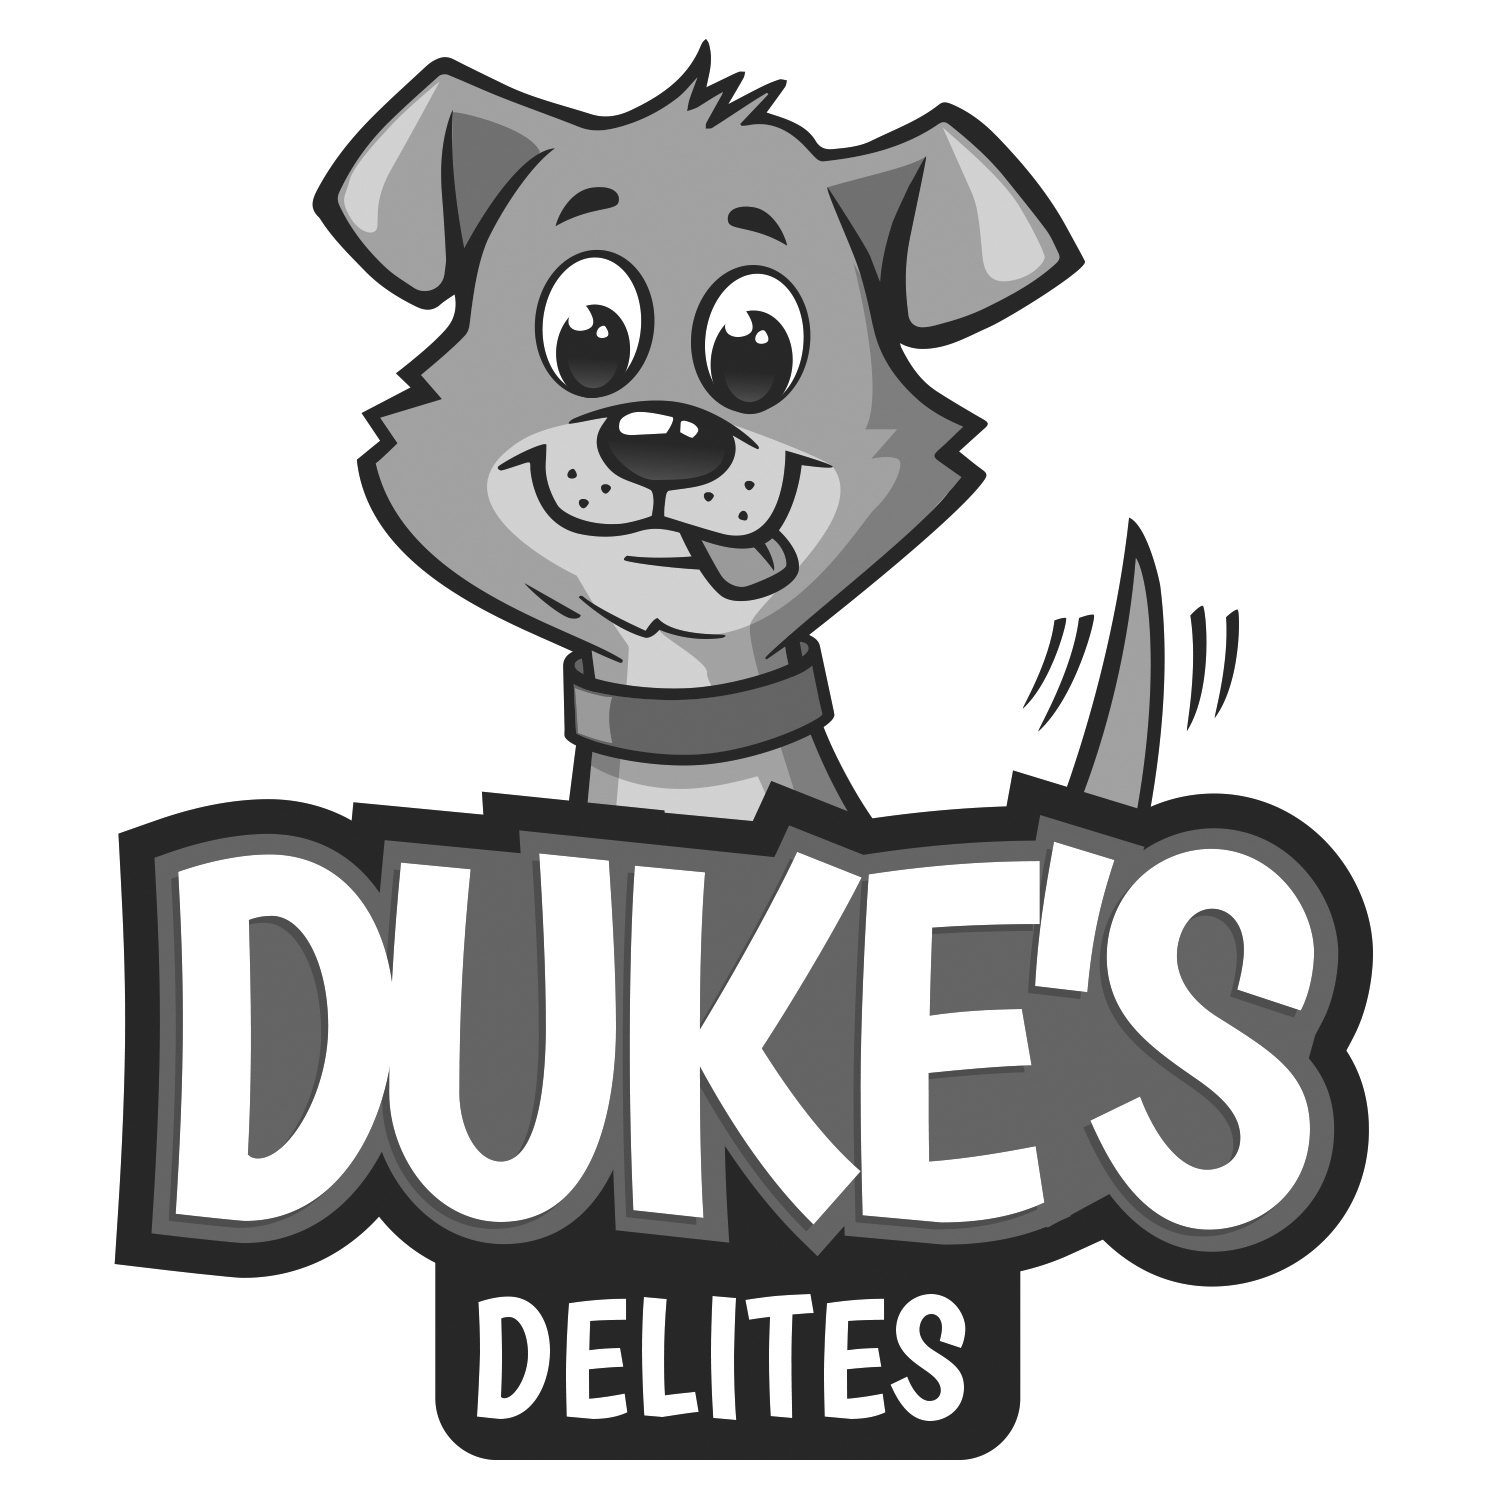  DUKE'S DELITES